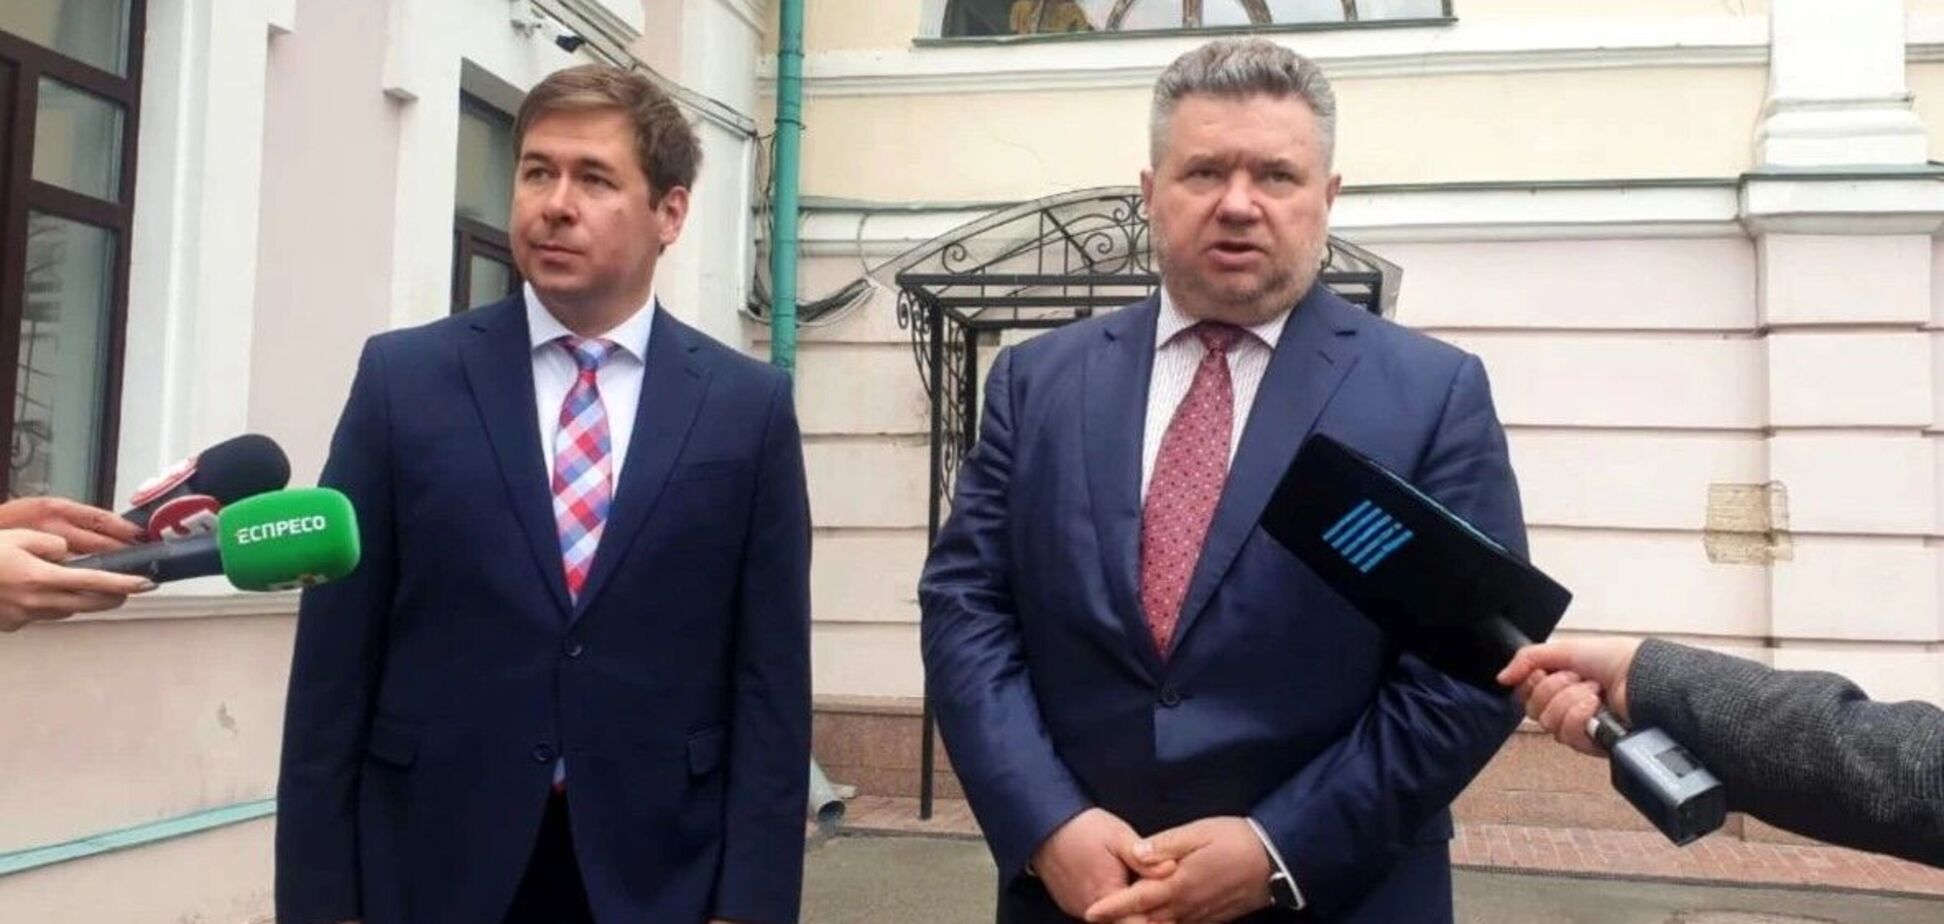 Адвокаты Порошенко заявили, что не планируют участвовать в 'постановочных шоу' по заказу властей